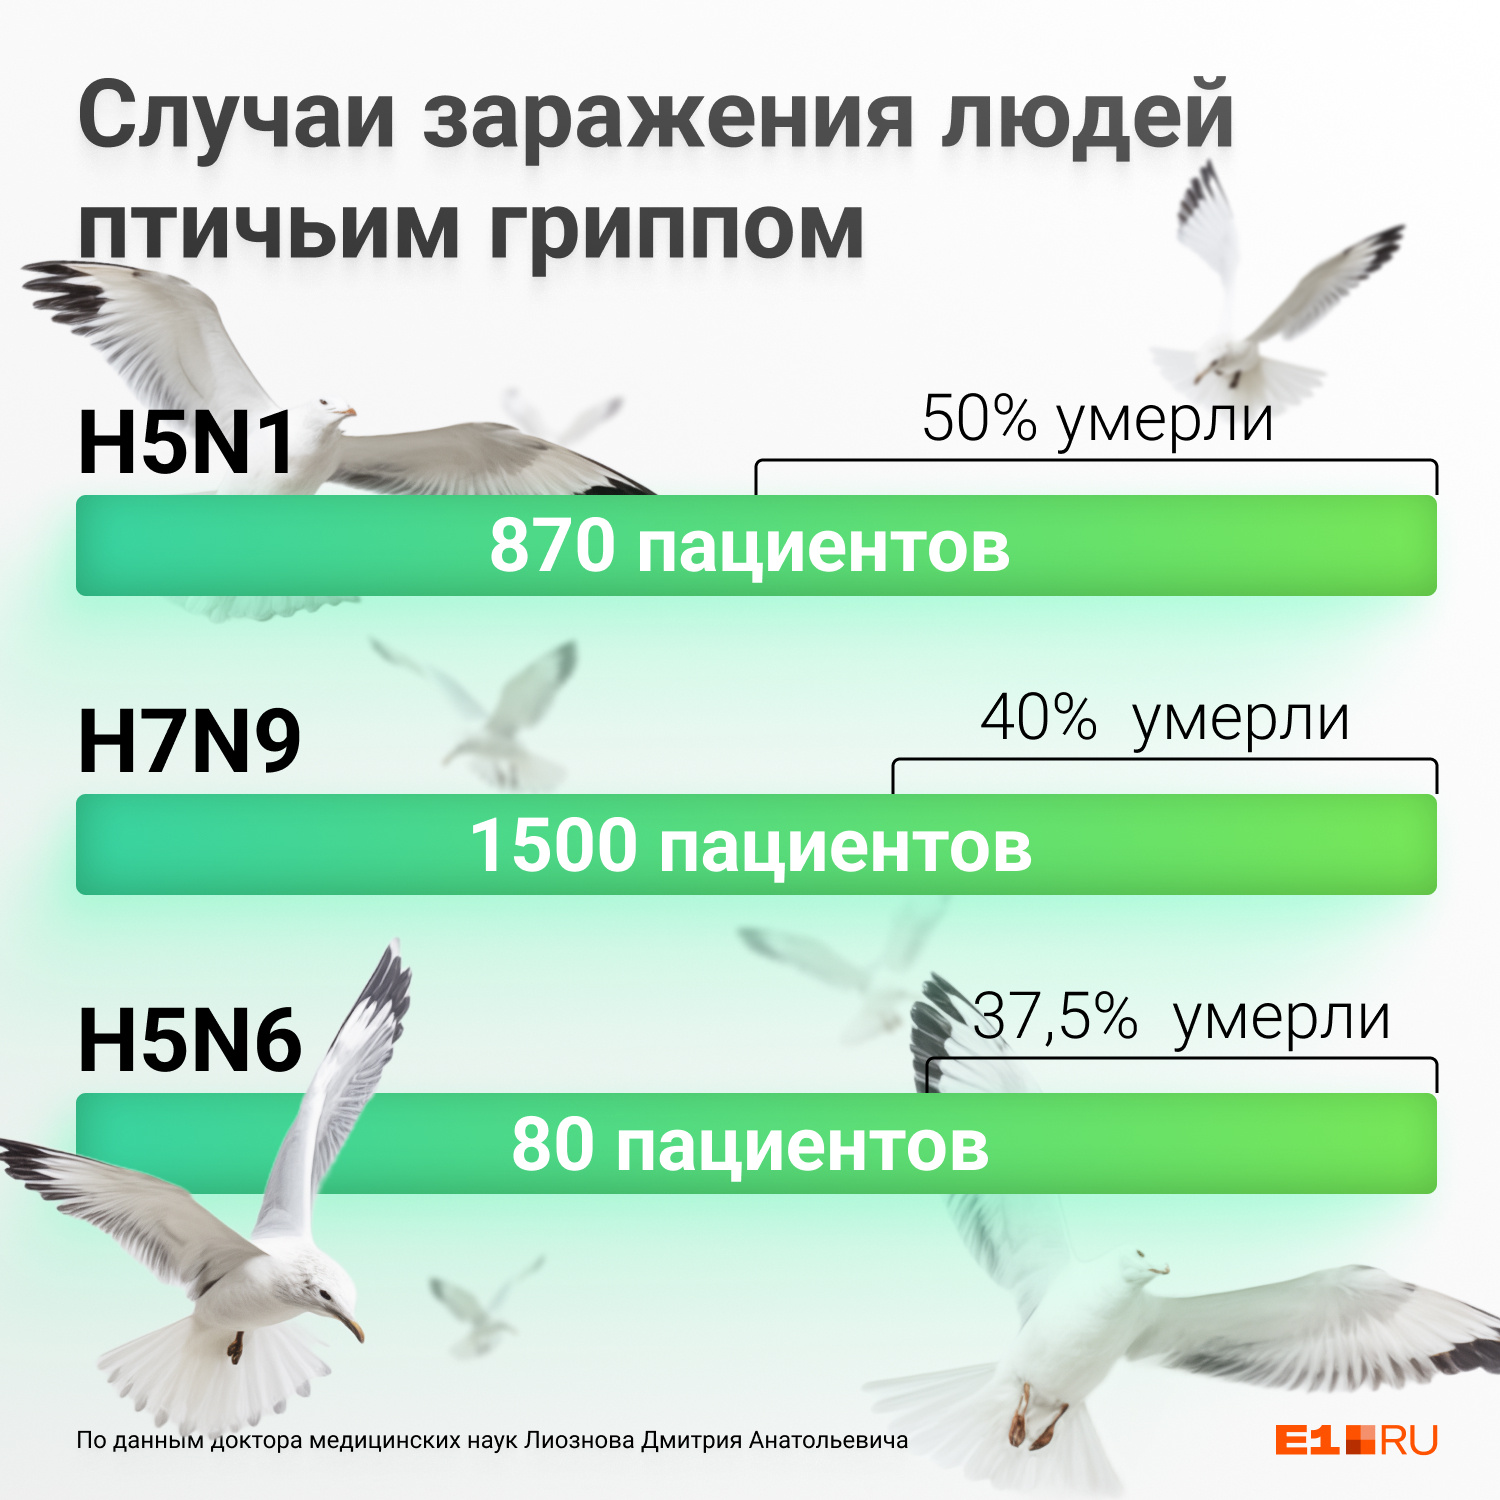 В России случаев гриппа птиц среди людей не зарегистрировано, но в мире, к сожалению, такое уже было